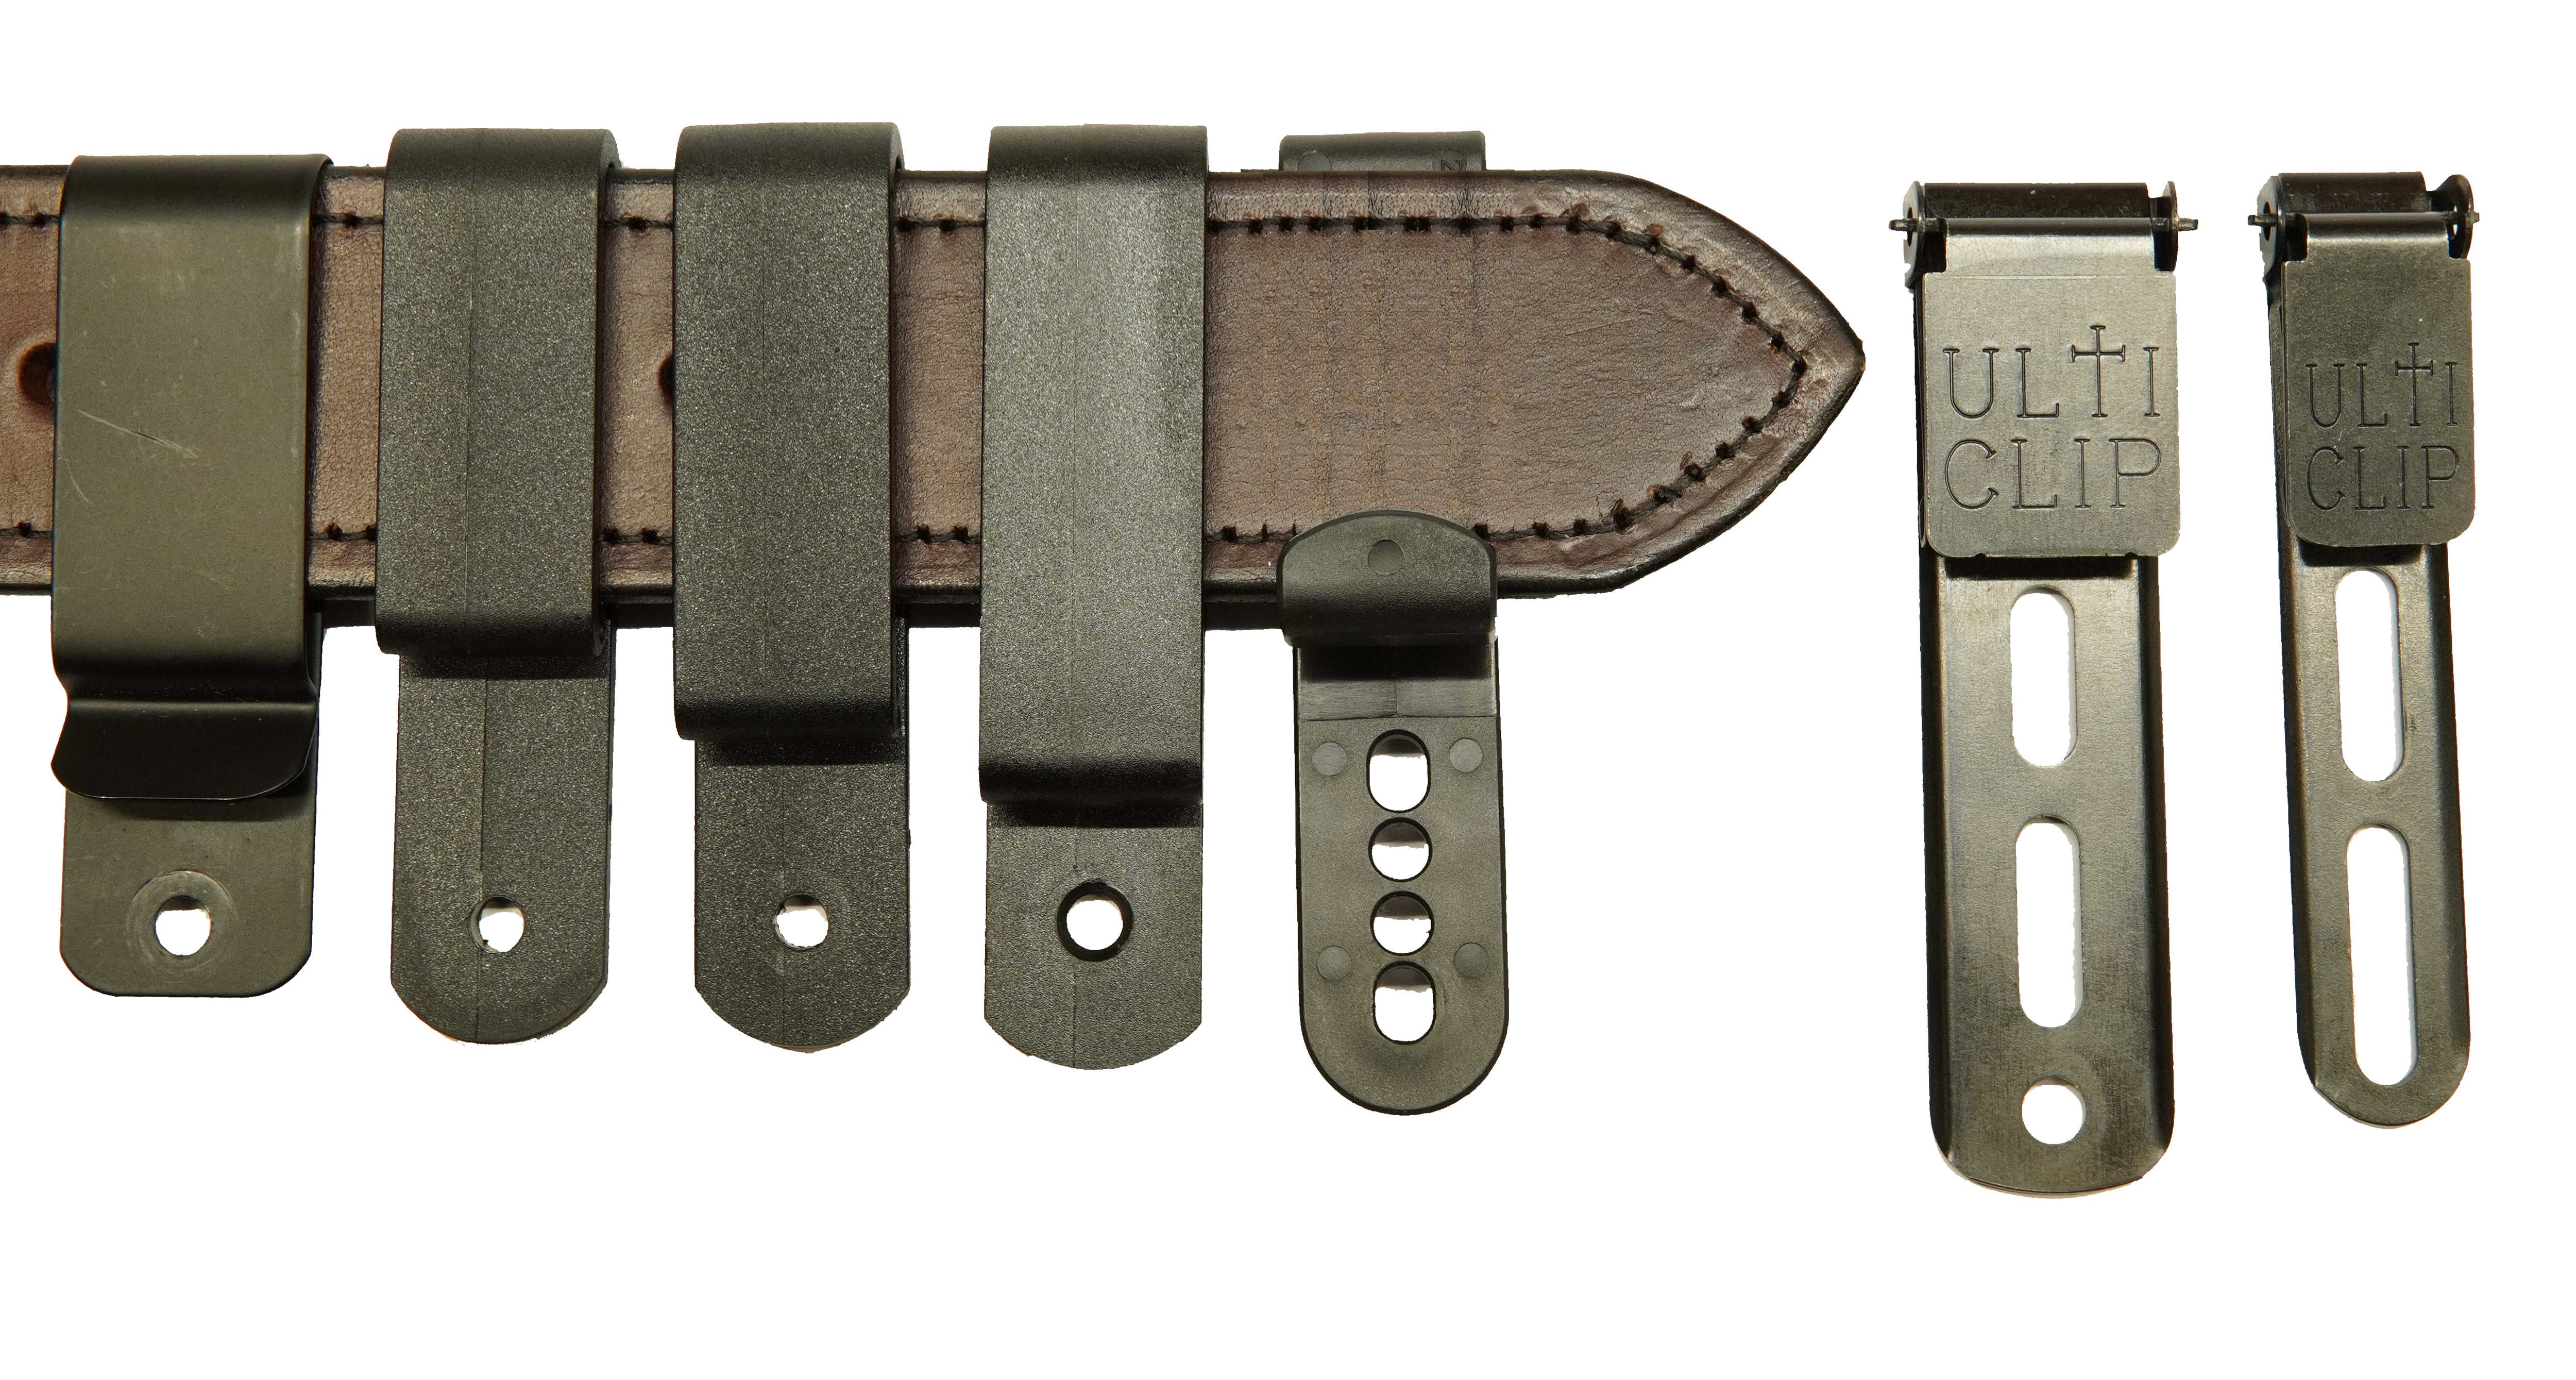  Inc. > Metal Belt Clips > Spring steel metal holster